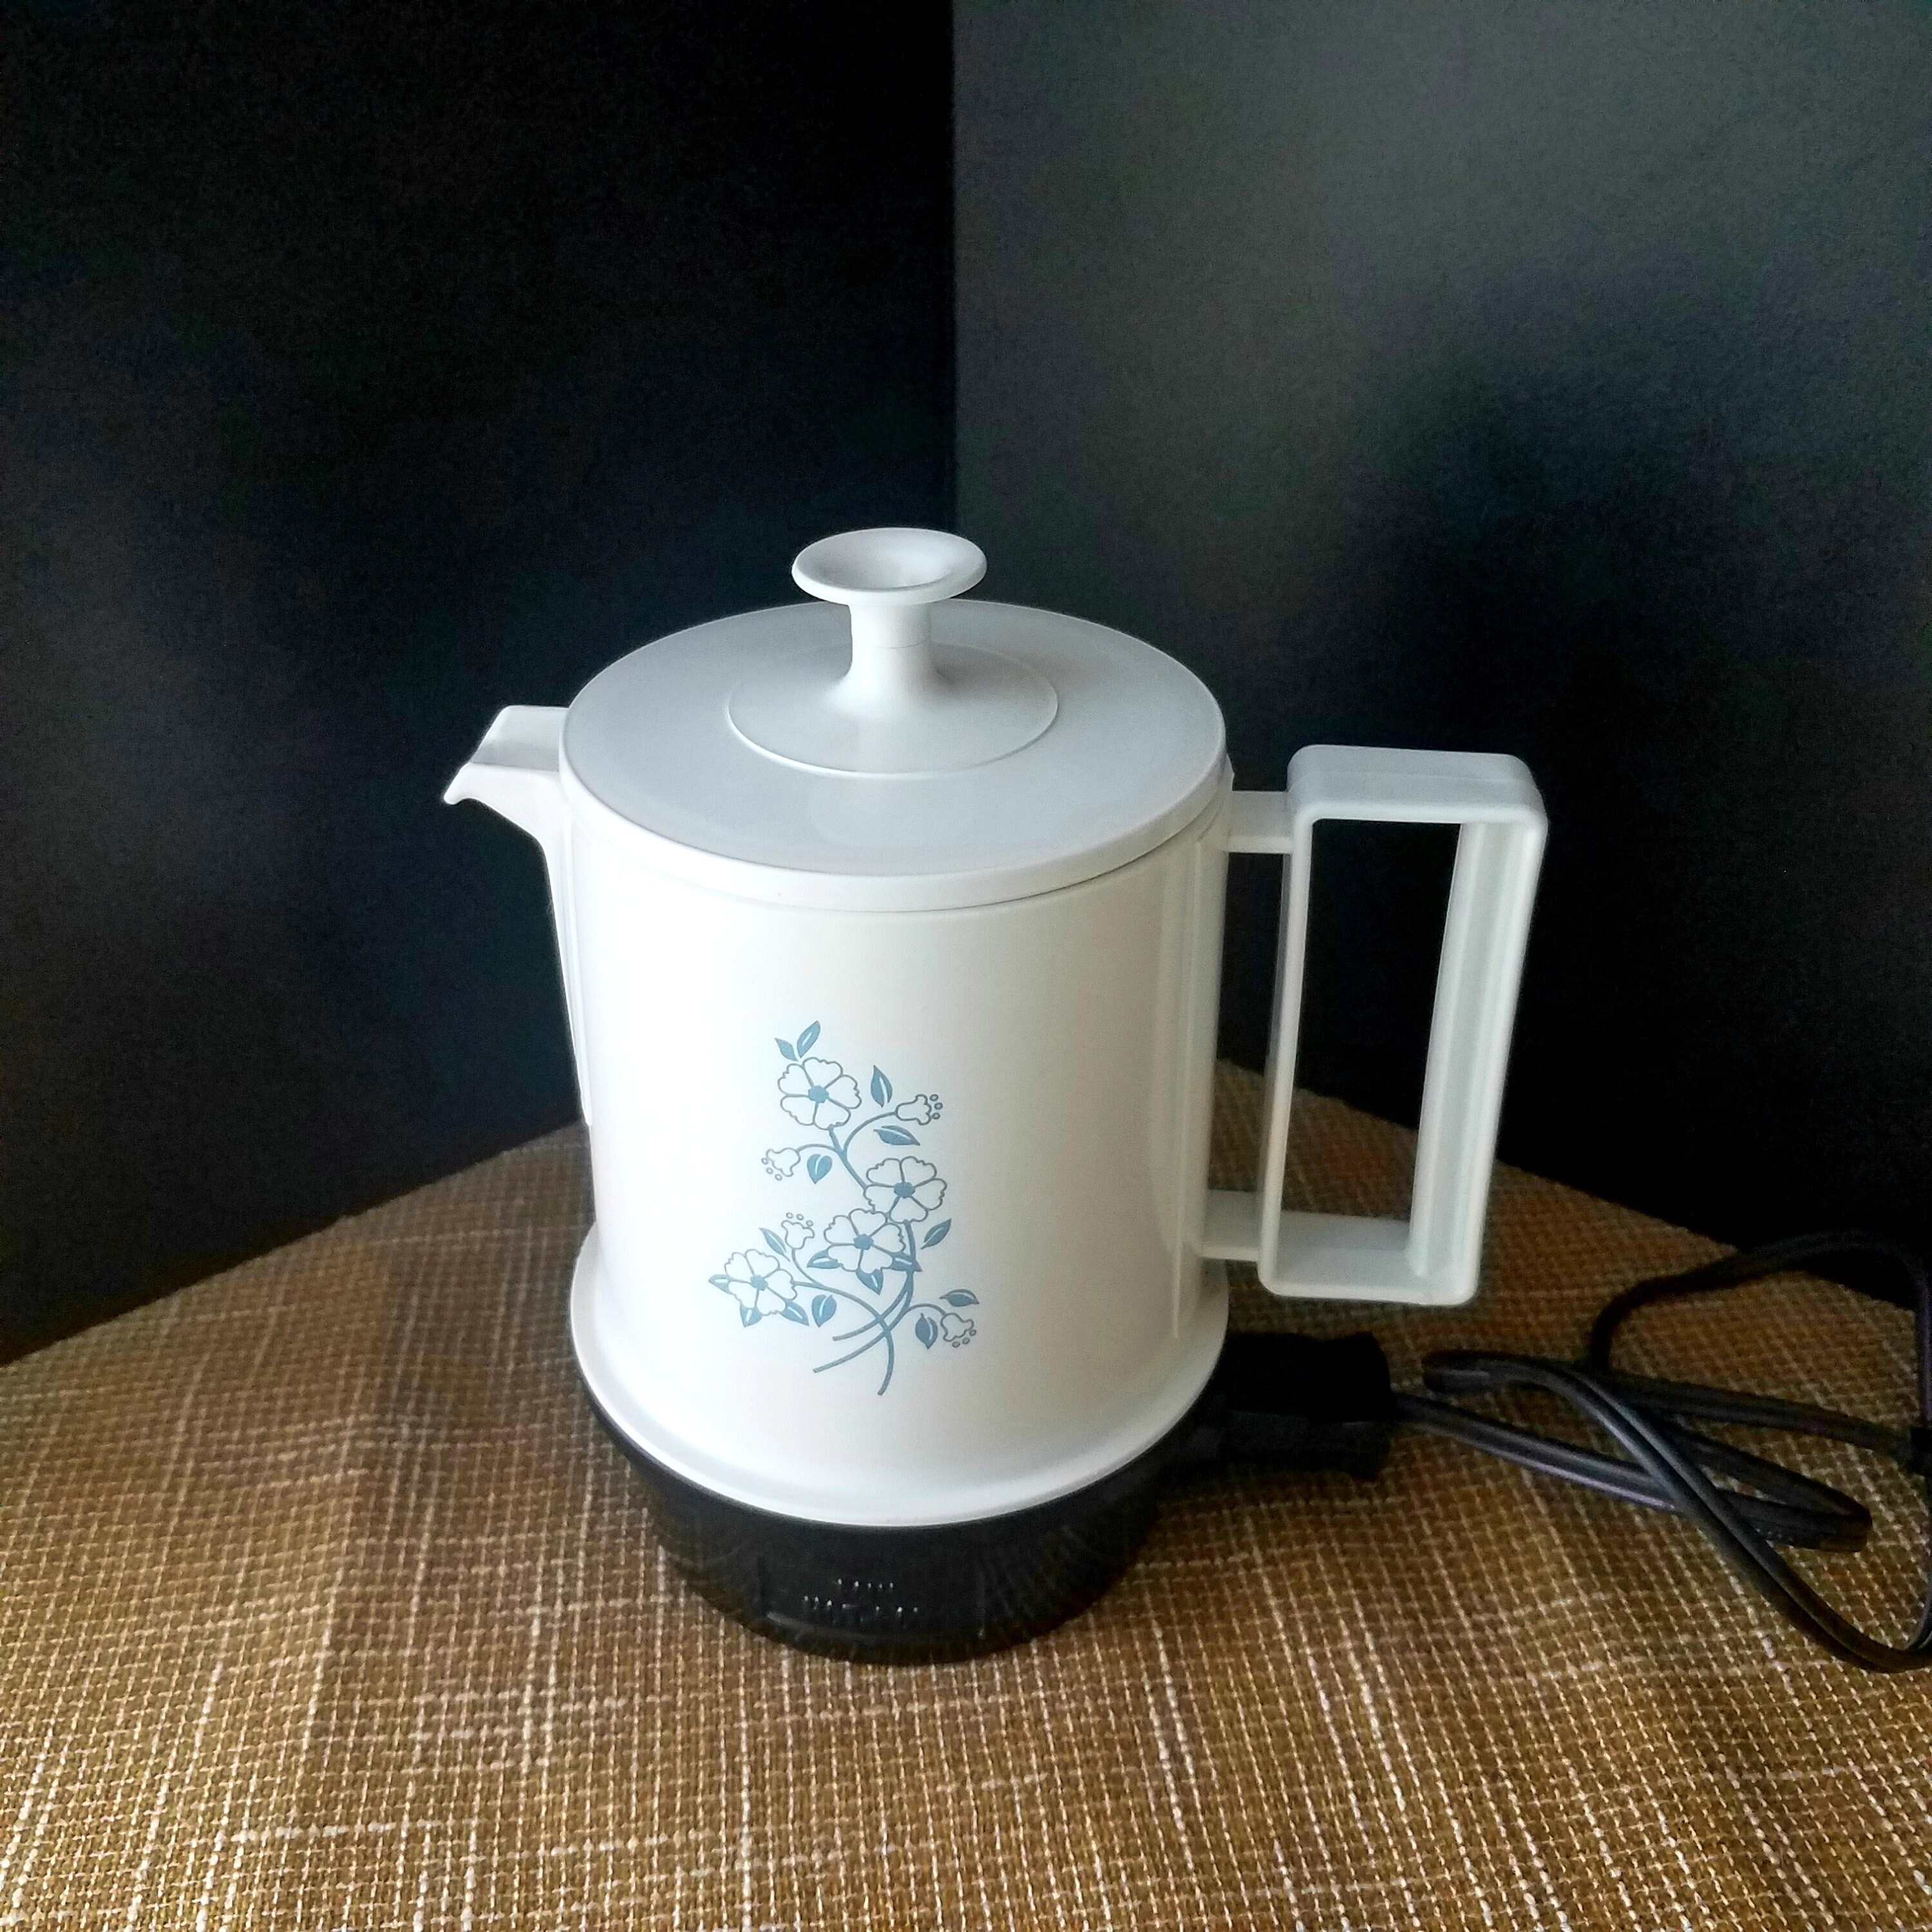 Vintage Electric Kettle Dormer Hurri-hot Egg Cooker/ Hot Water Pot